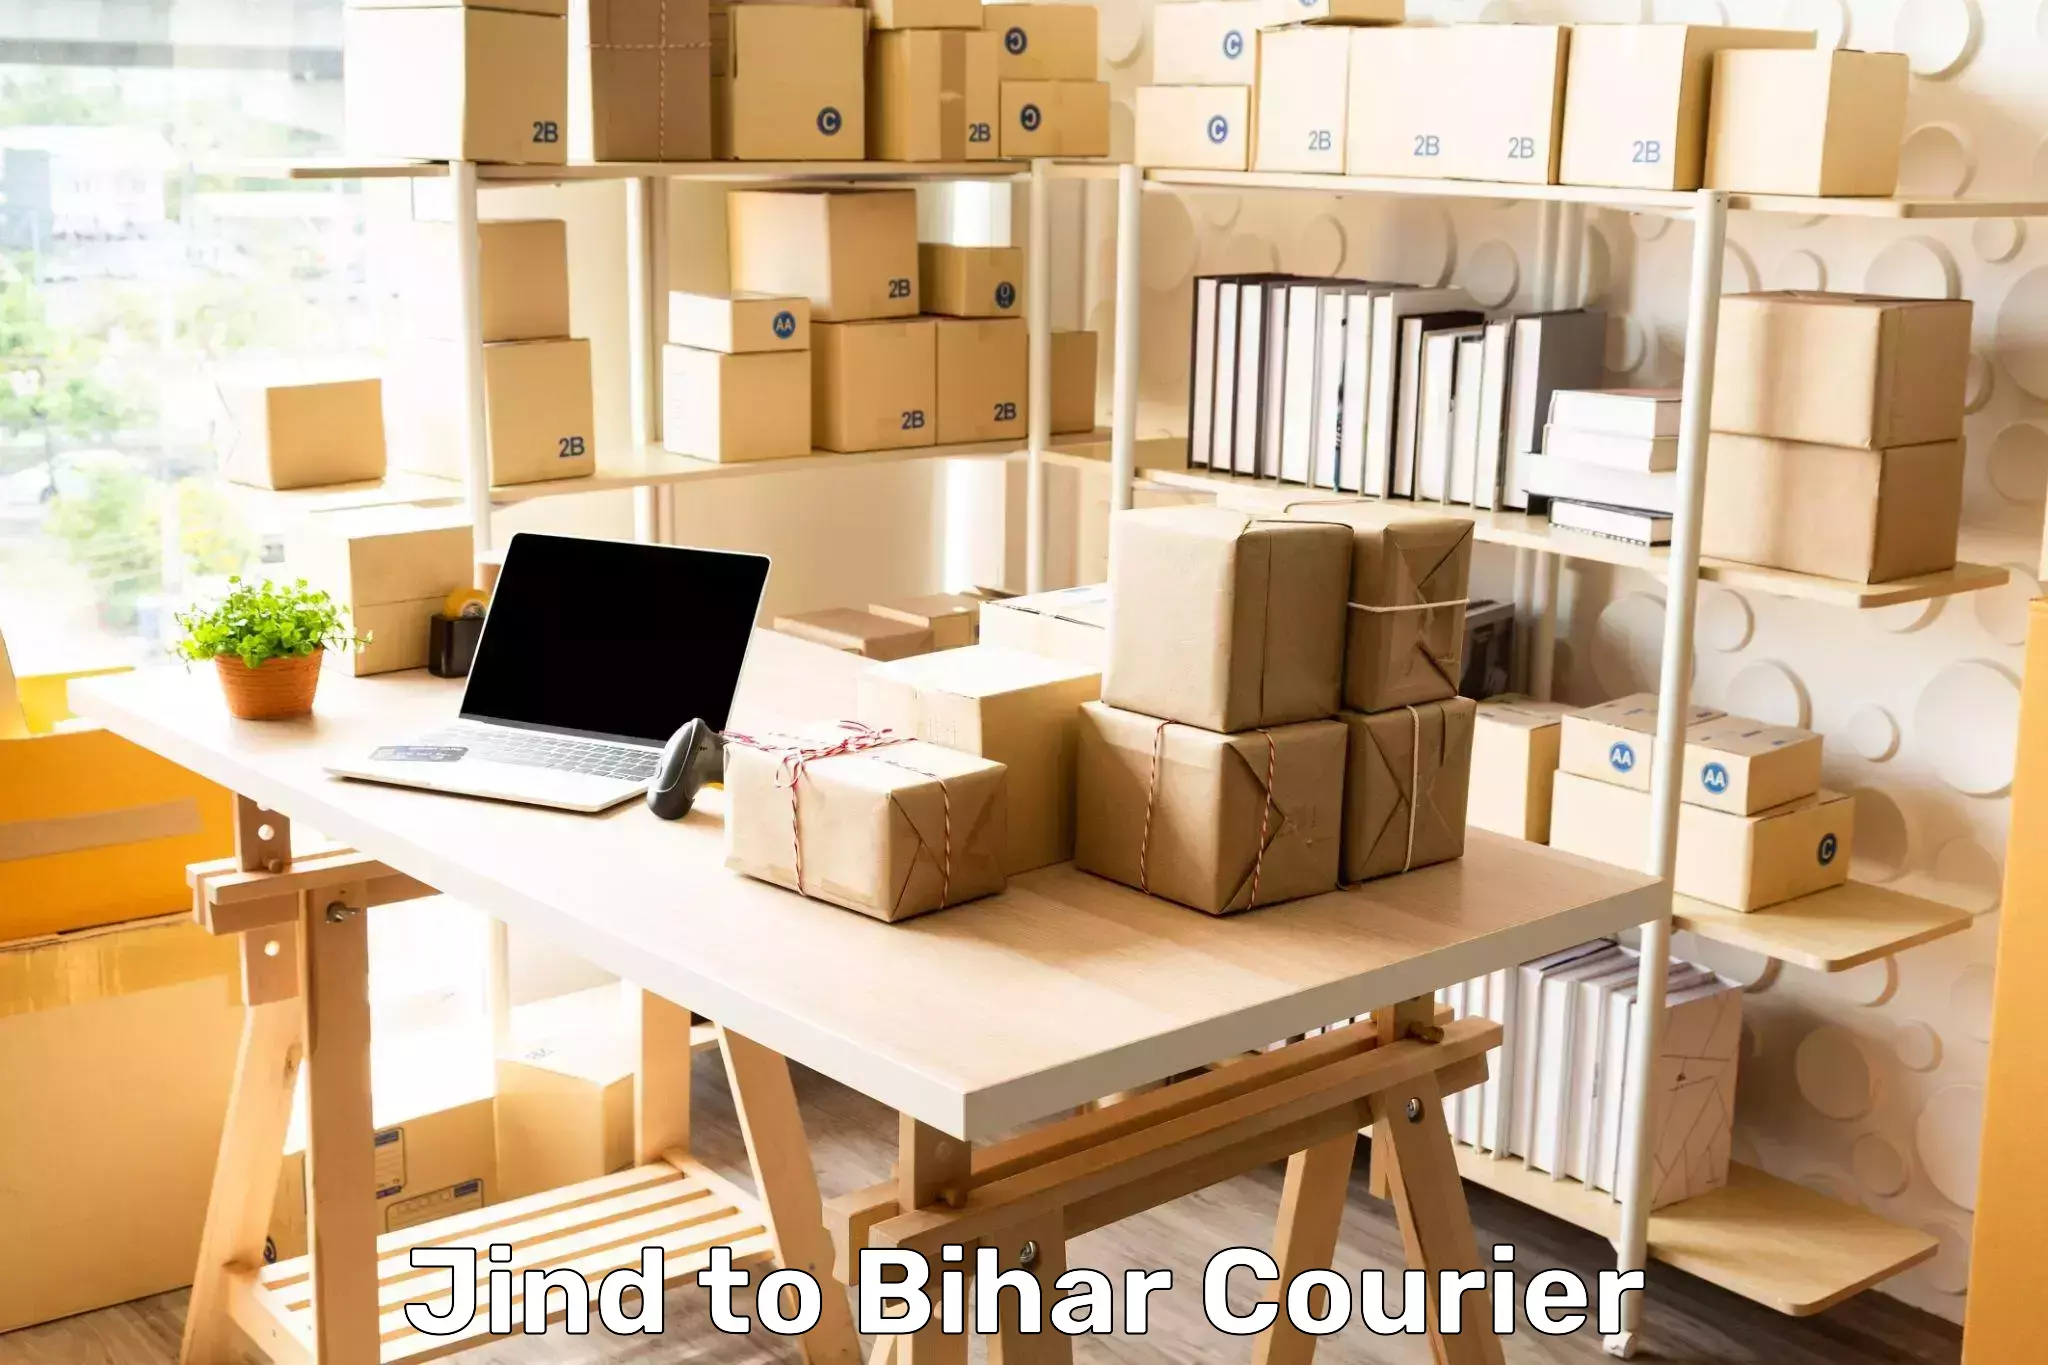 Package forwarding in Jind to Bihar